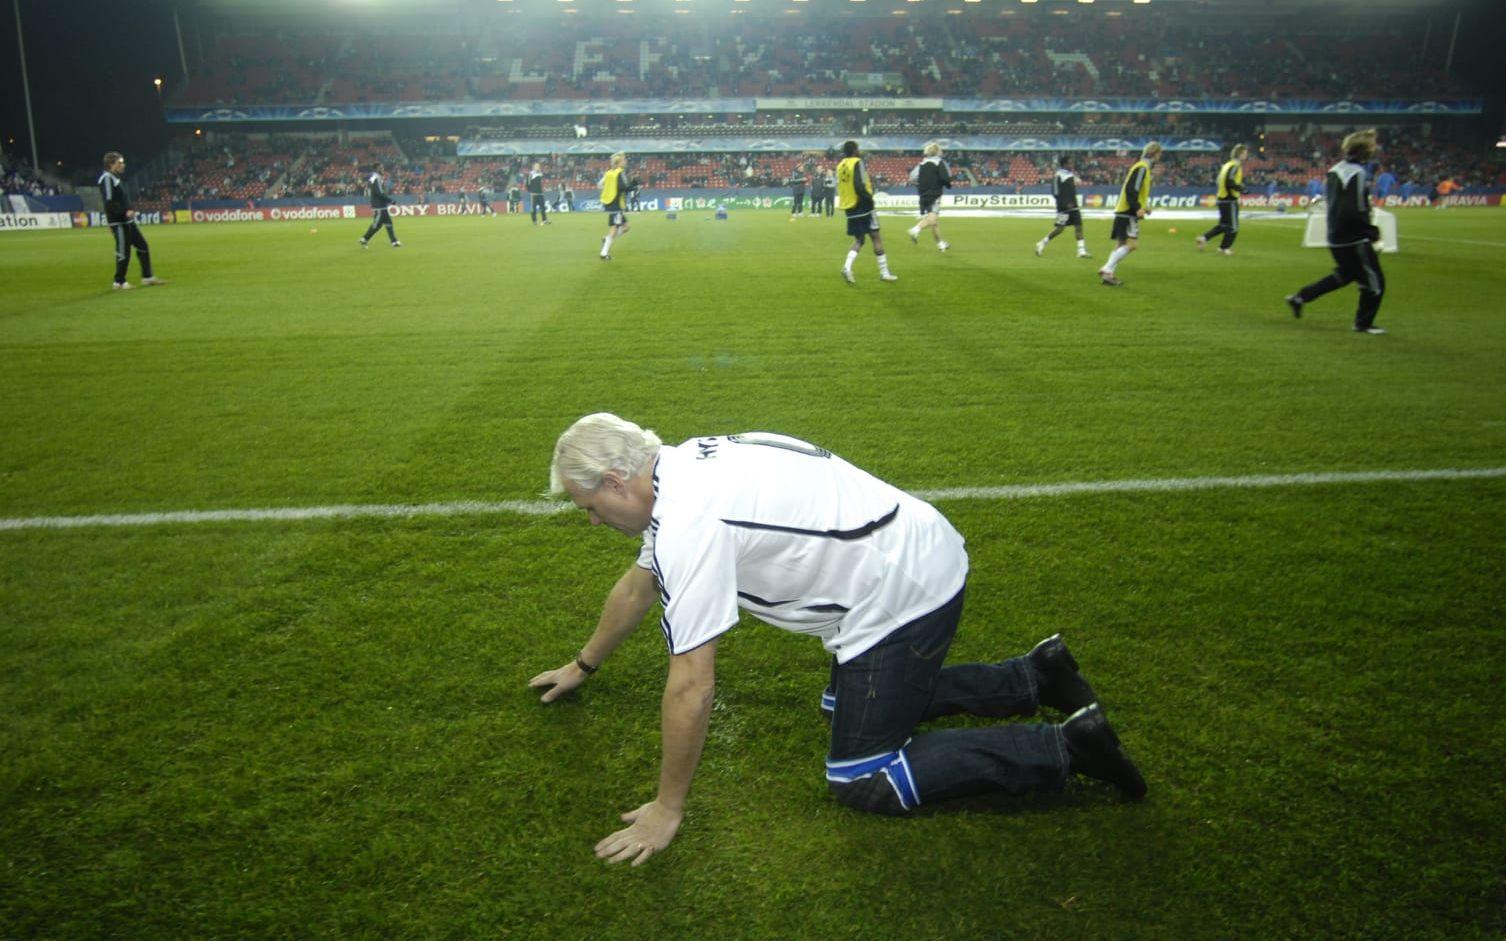 49. Hysén var säker på att Chelsea skulle slå Rosenborg i Champions League 2007. Om engelsmännen skulle misslyckas lovade han att krypa tolv mil. Foto: TT